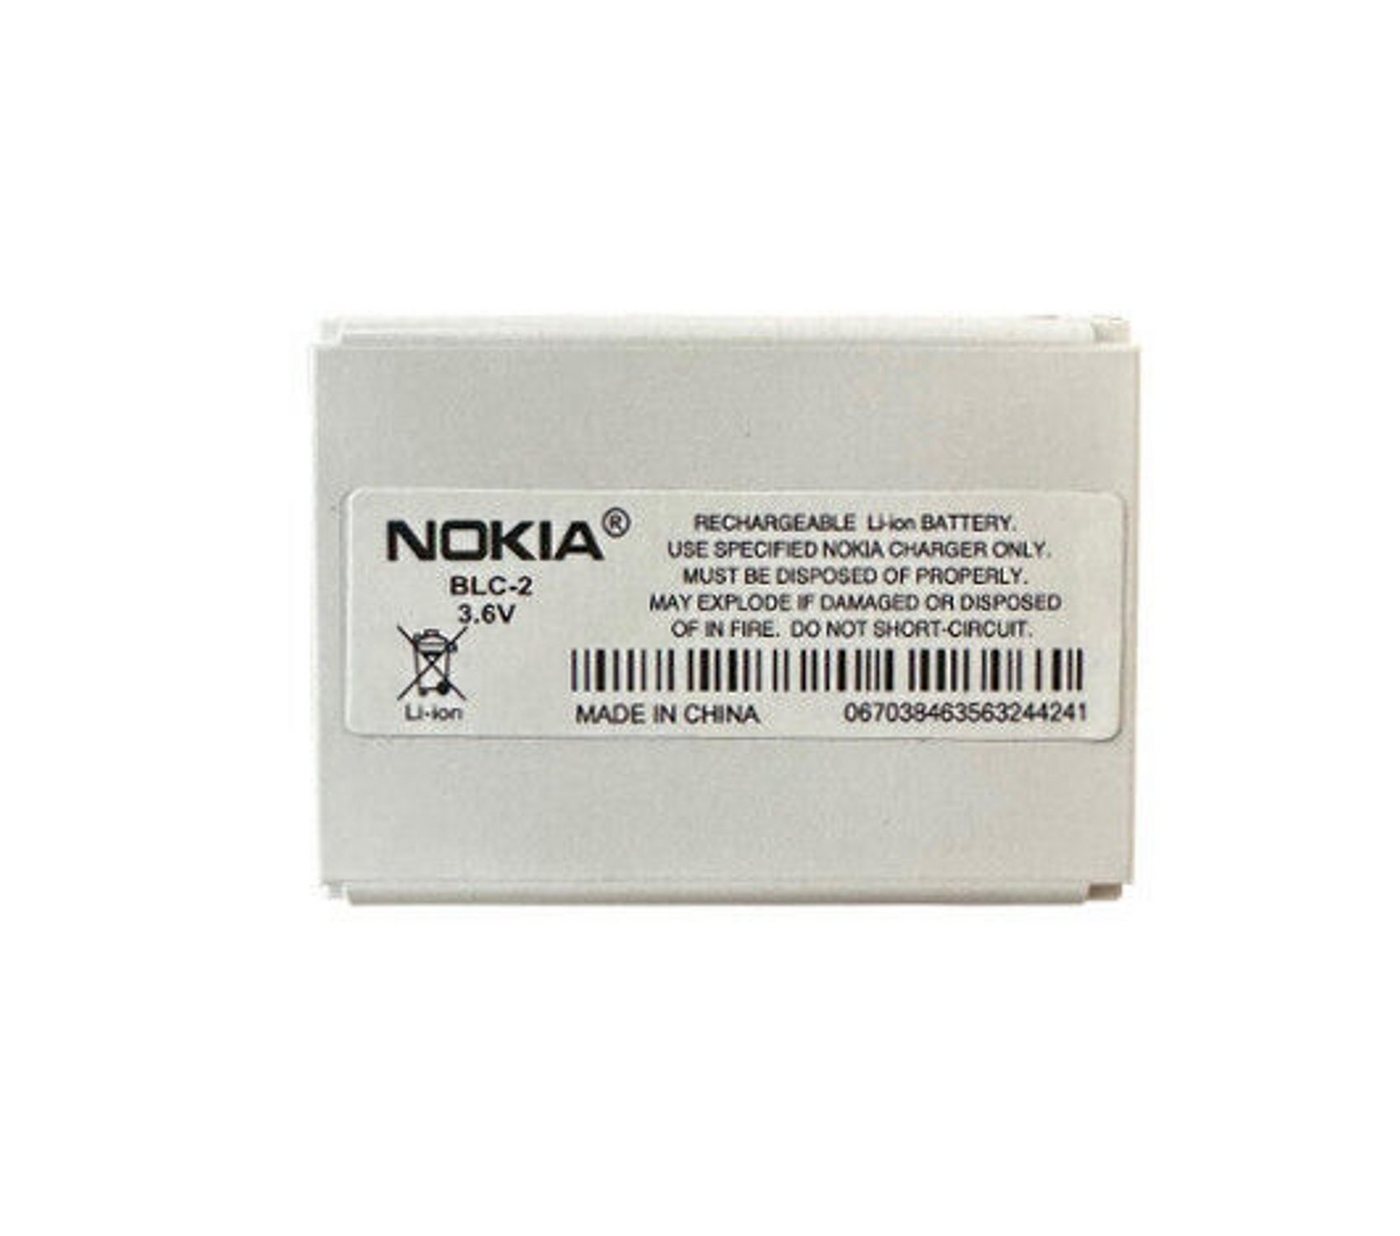 Nokia Original Nokia BLC-2 Akku 1000 mAh Nokia 3310 3330 3510 3410 3510i Handy-Akku Nokia BLC-2 1000 mAh (3,6 V), Schnelles und effizientes Laden, Li-Ionen Zellen, Überladungsschutz von Nokia